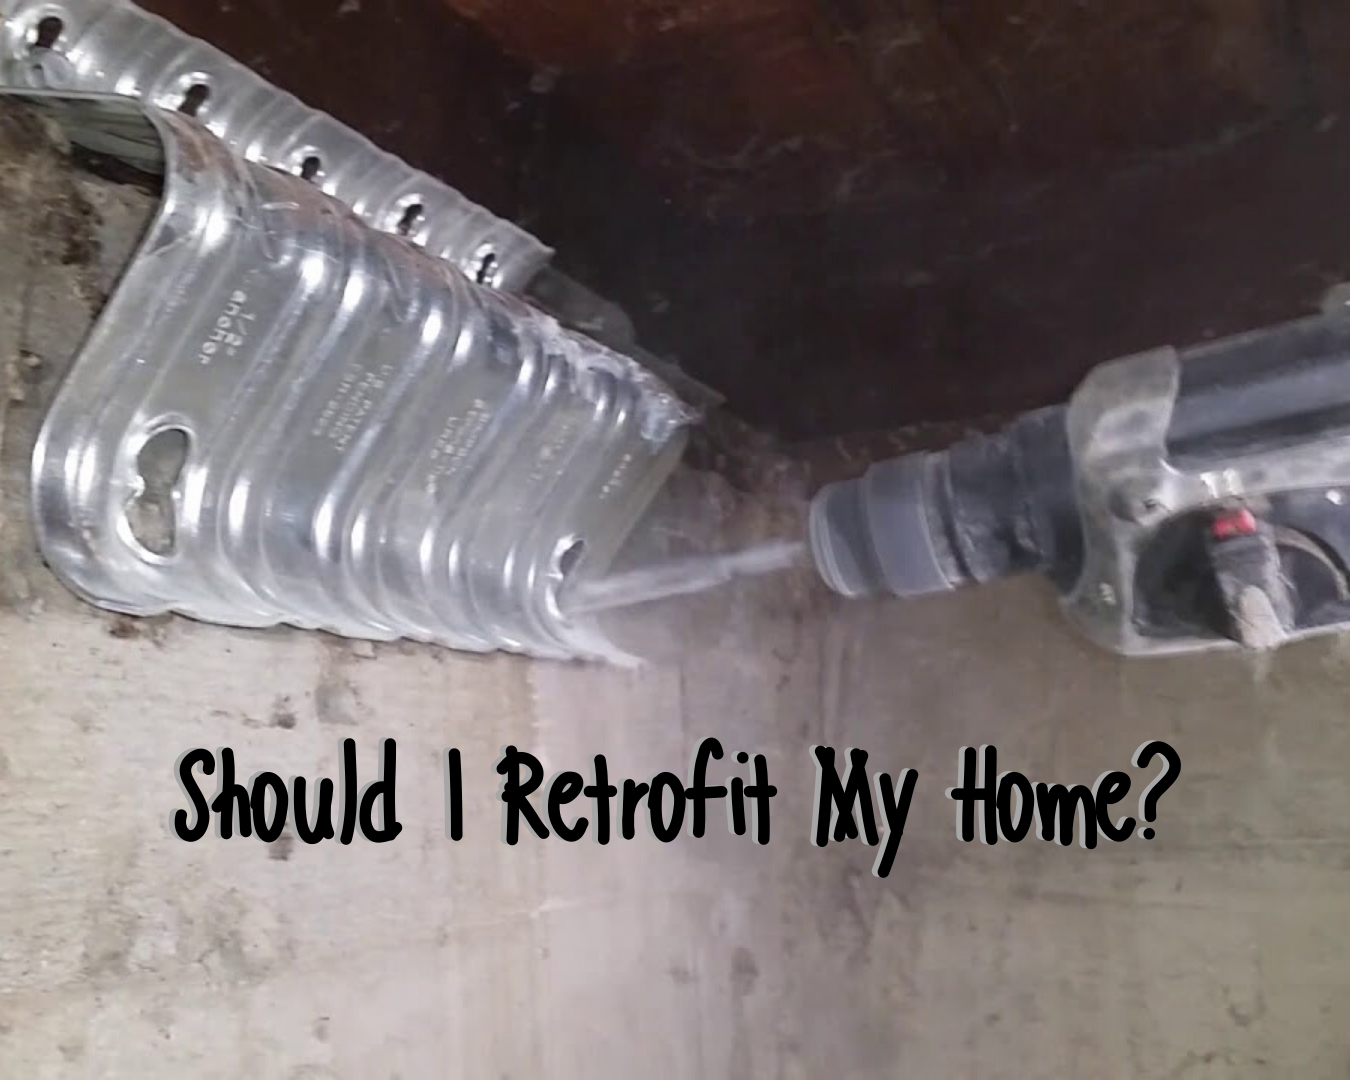 Should I Retrofit My Home?